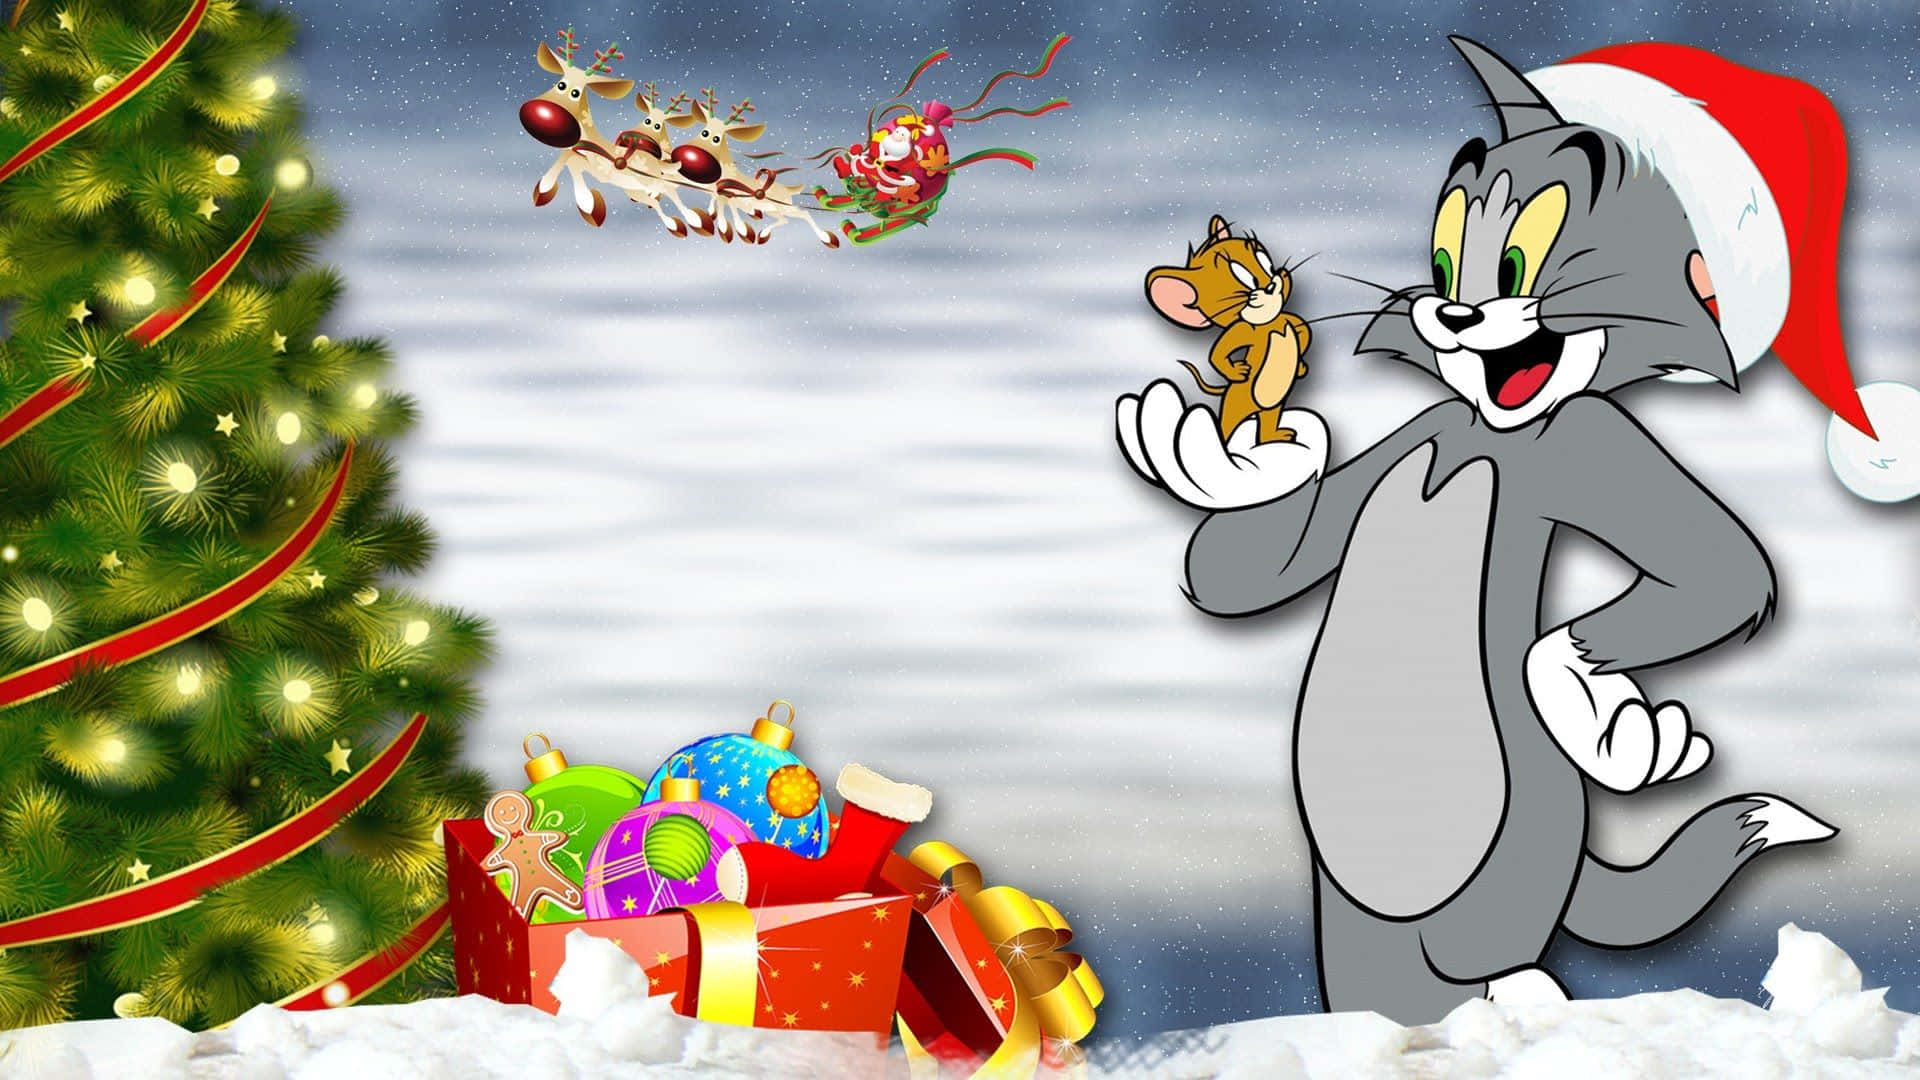 Cartoonde Natal Do Tom E Jerry. Papel de Parede